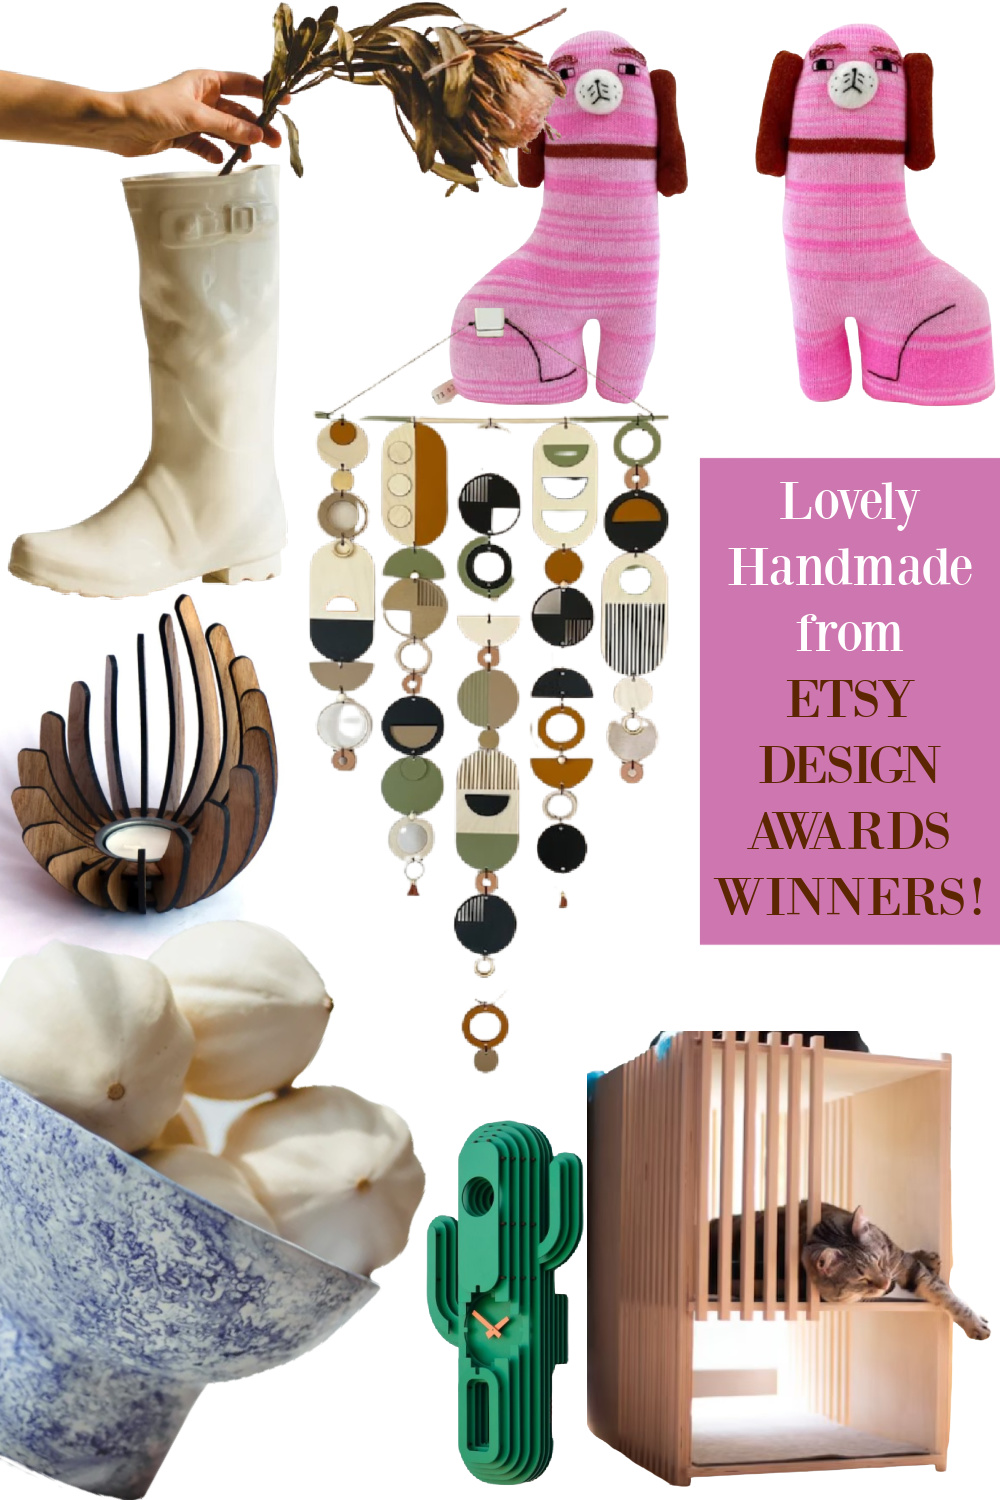 Lovely handmade from Etsy Design Awards Winners - on Hello Lovely Studio! #etsydesignawards #handmadefinds